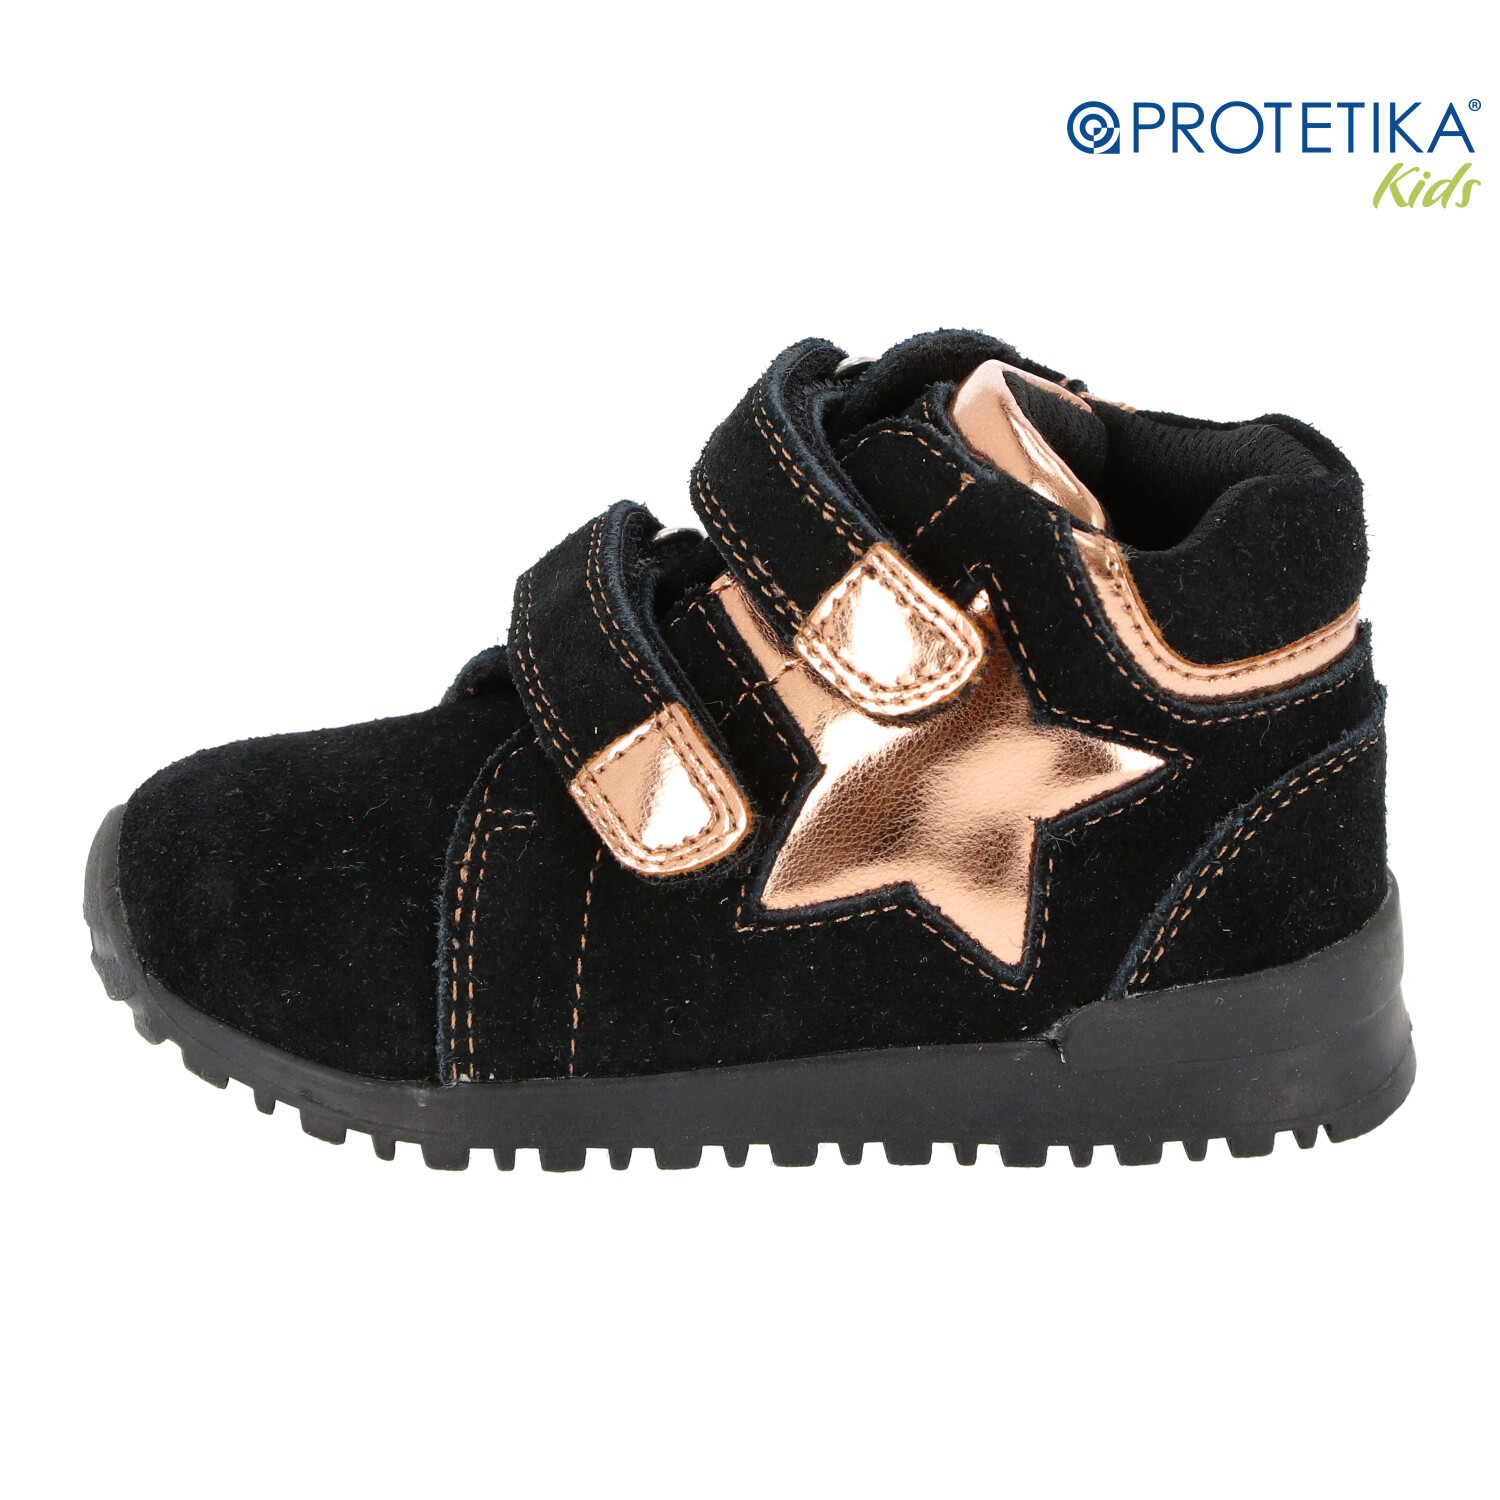 Protetika - topánky VALA black